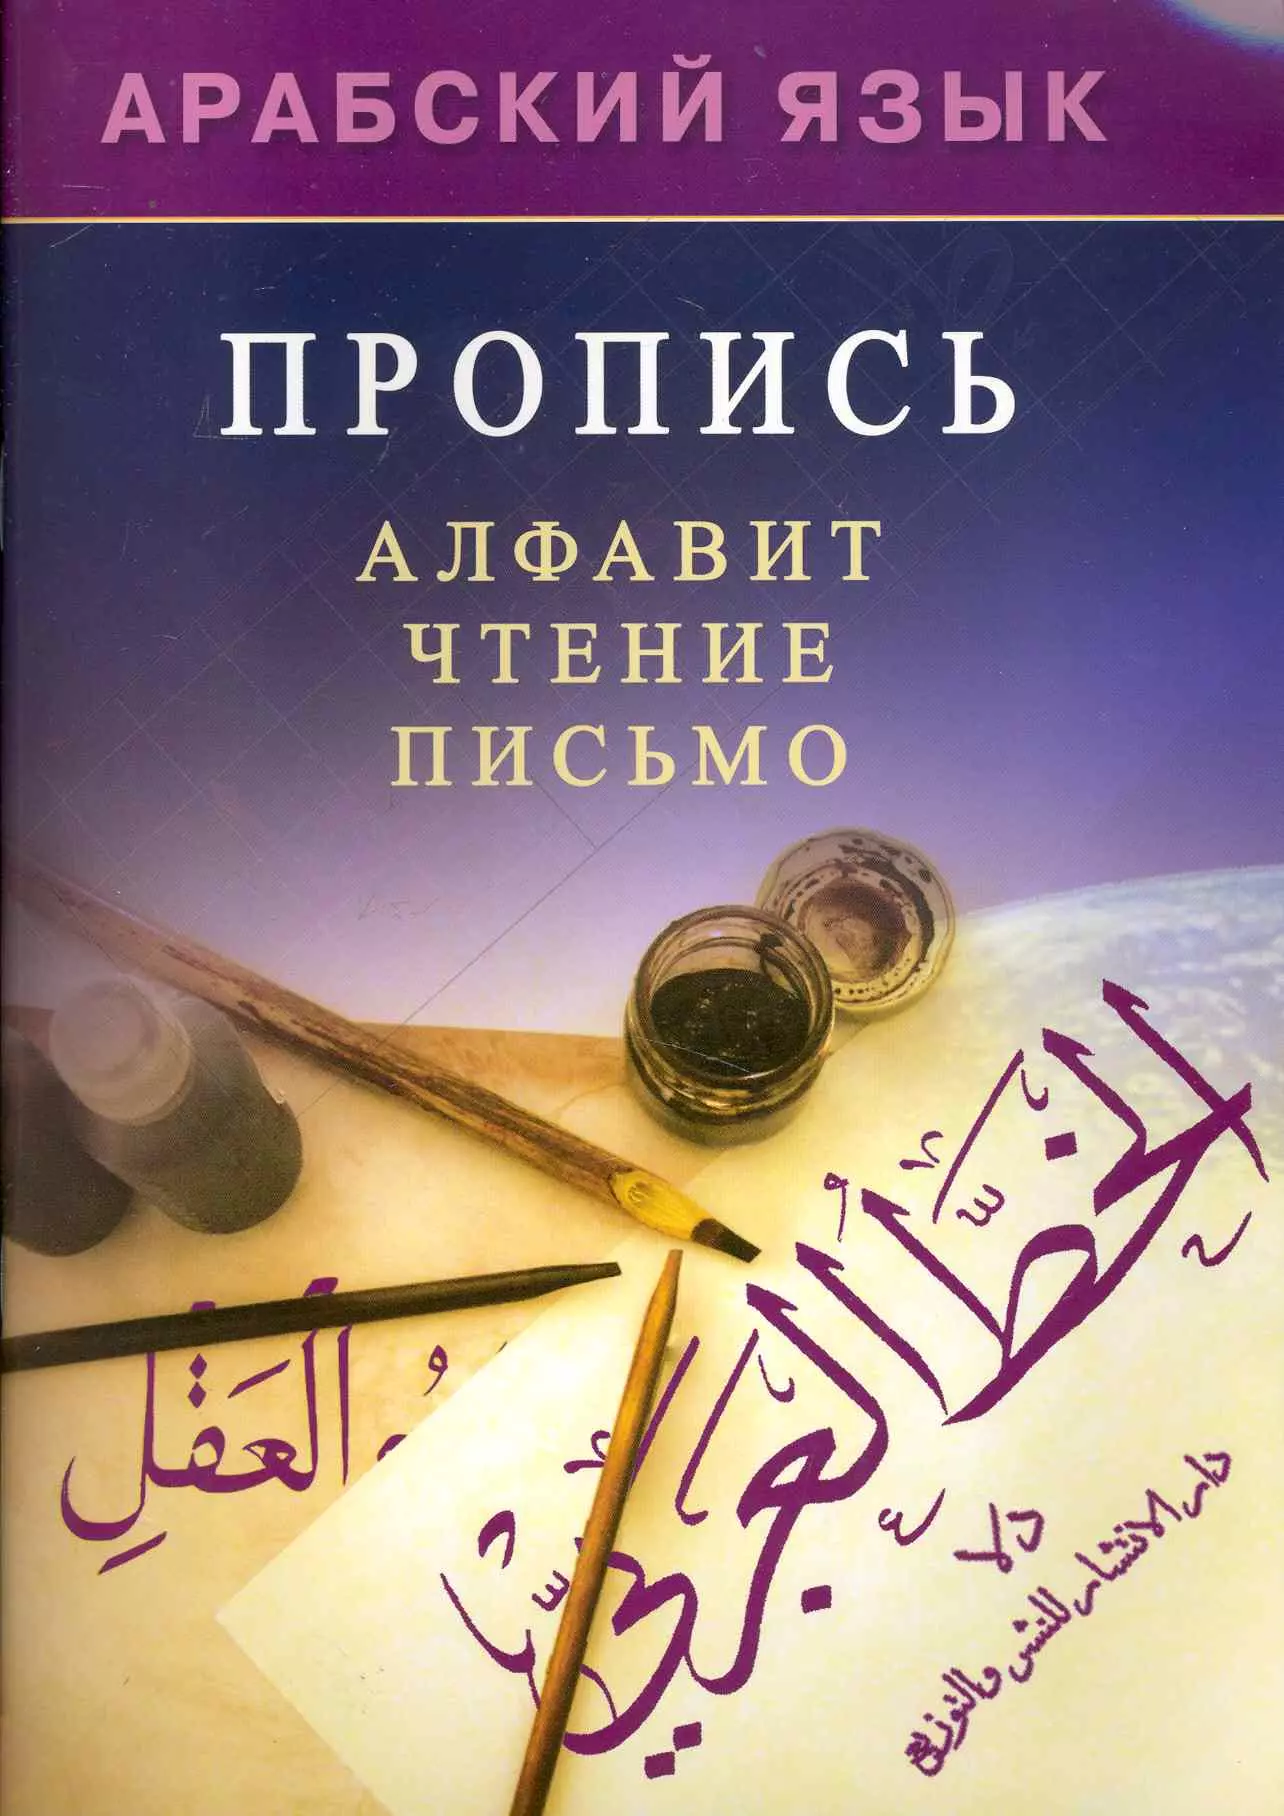 Мадраимов Хиндол А. Арабский язык. Пропись. бучентуф а арабский язык для чайников